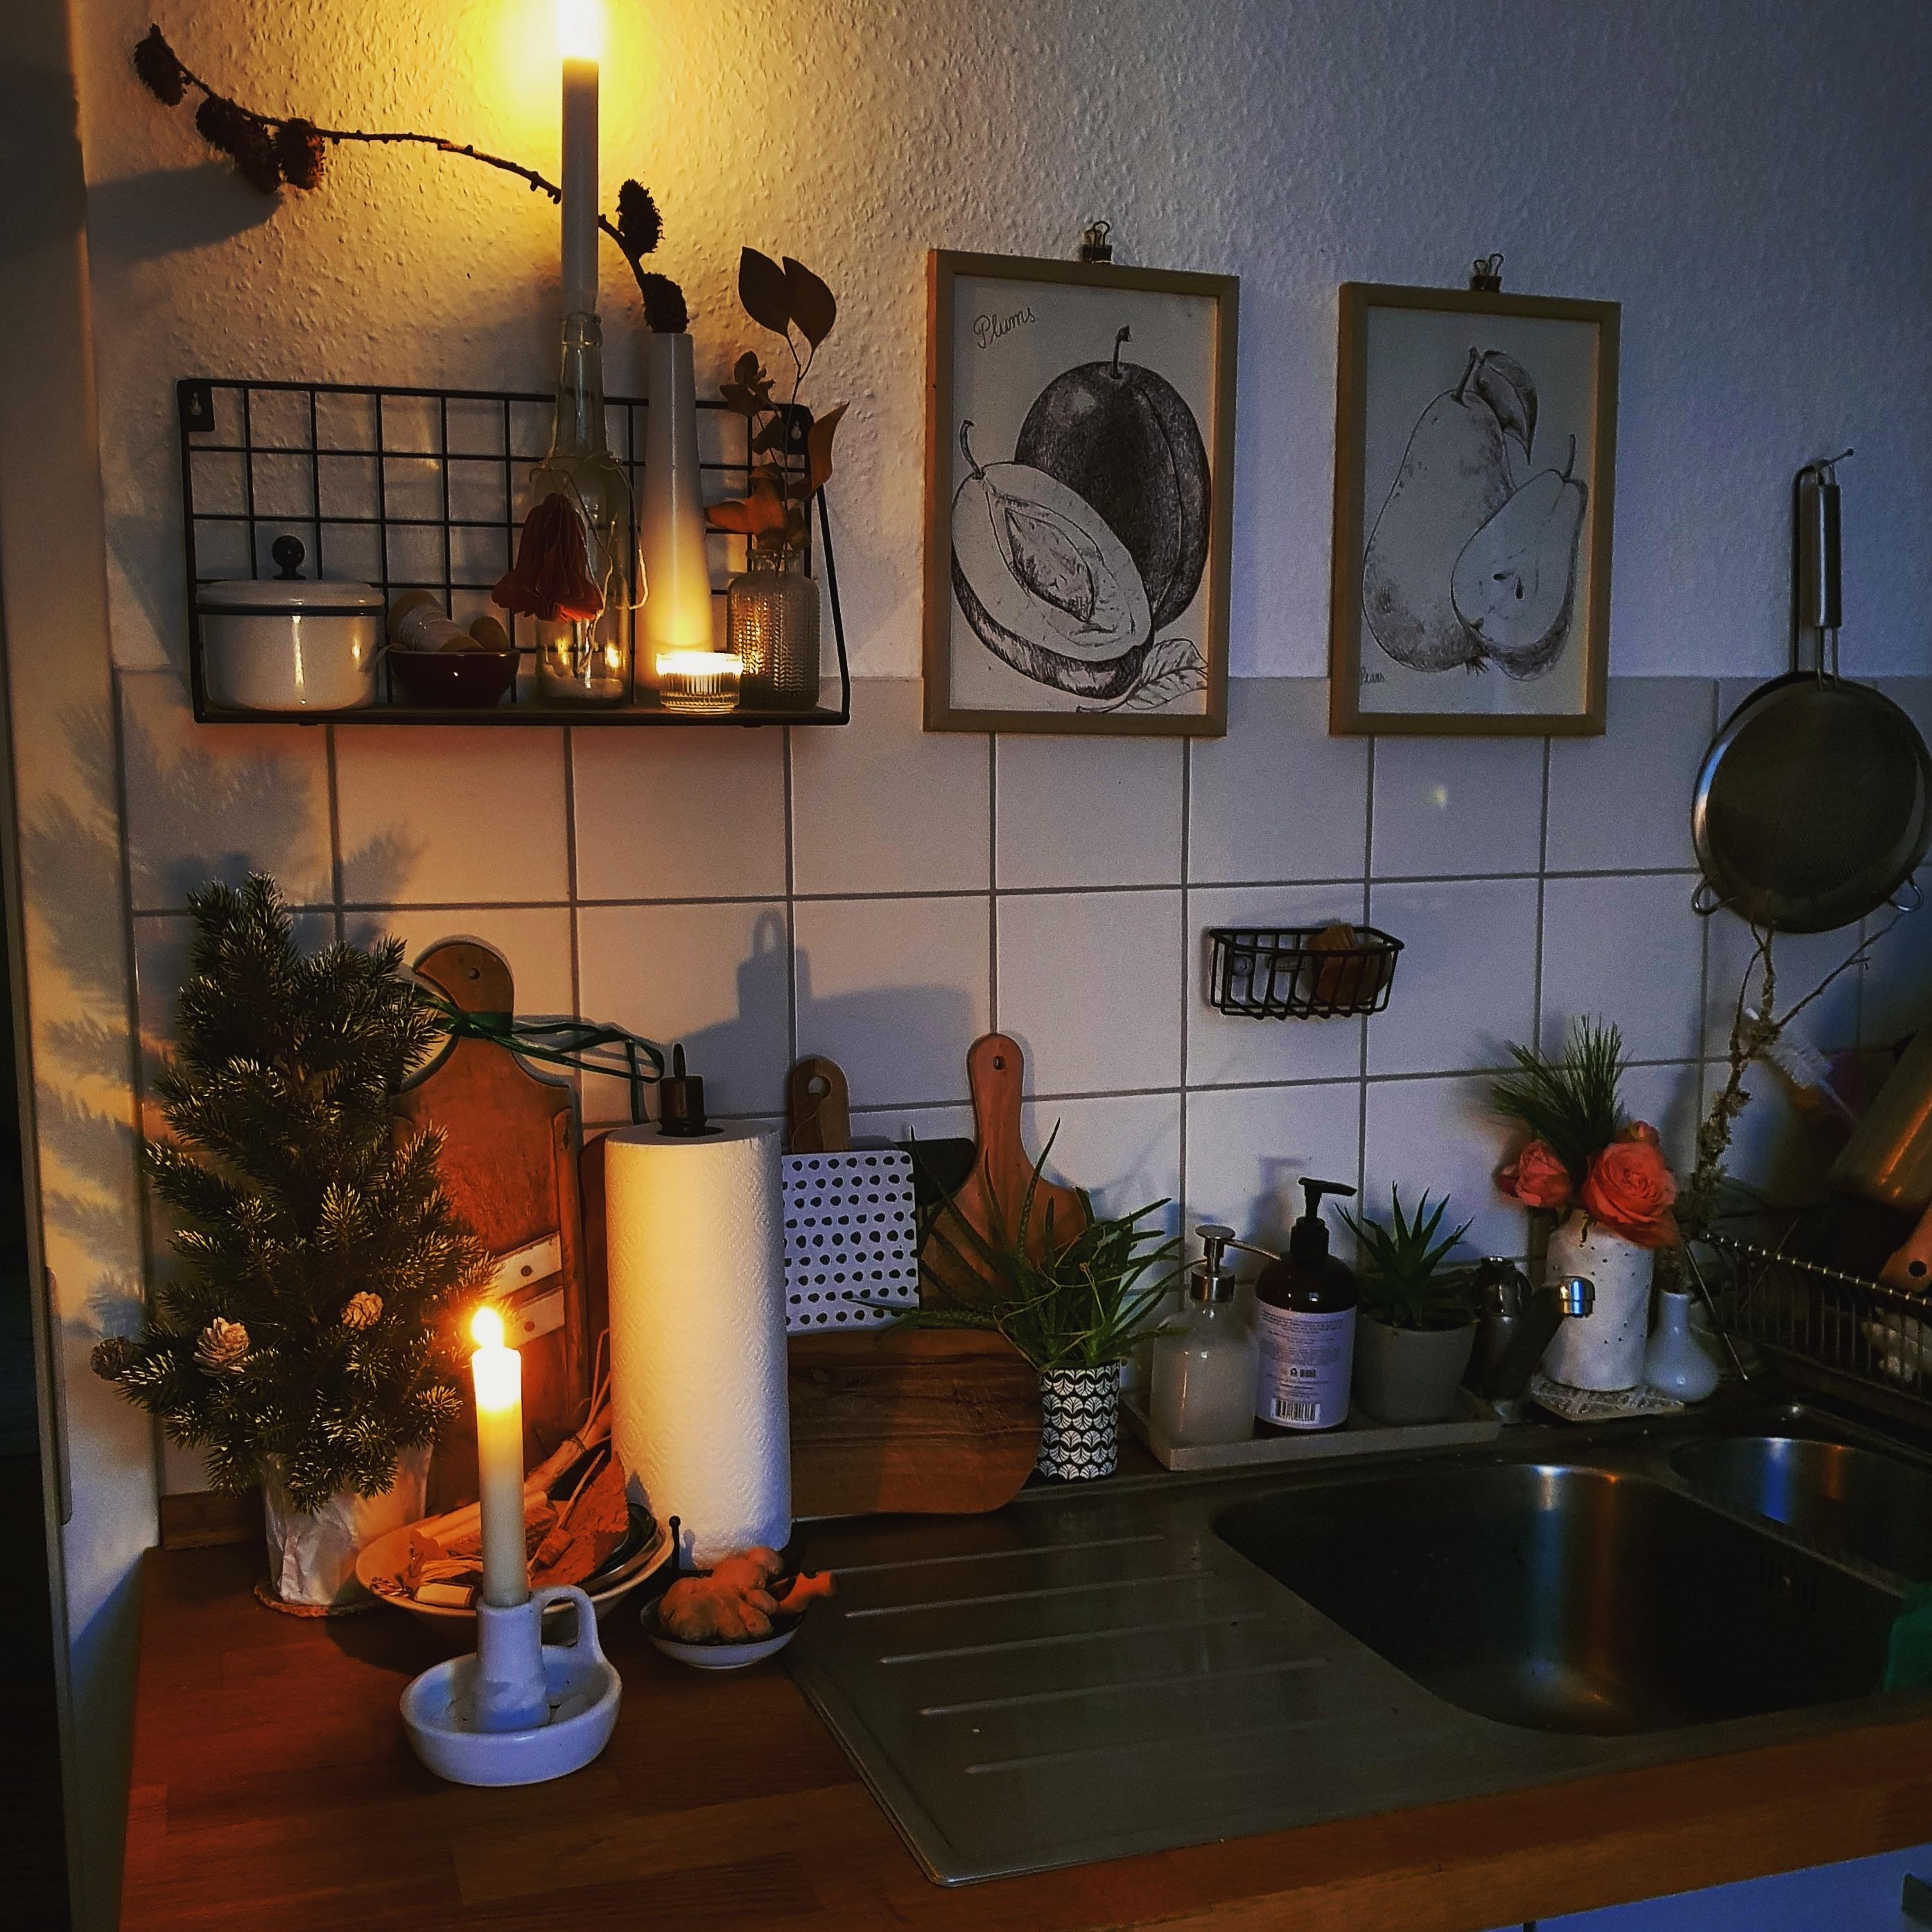 Adventliche Abendstimmung in der #Küche ☆ 
#adventsdeko #natur #kerzen #adventsküche 